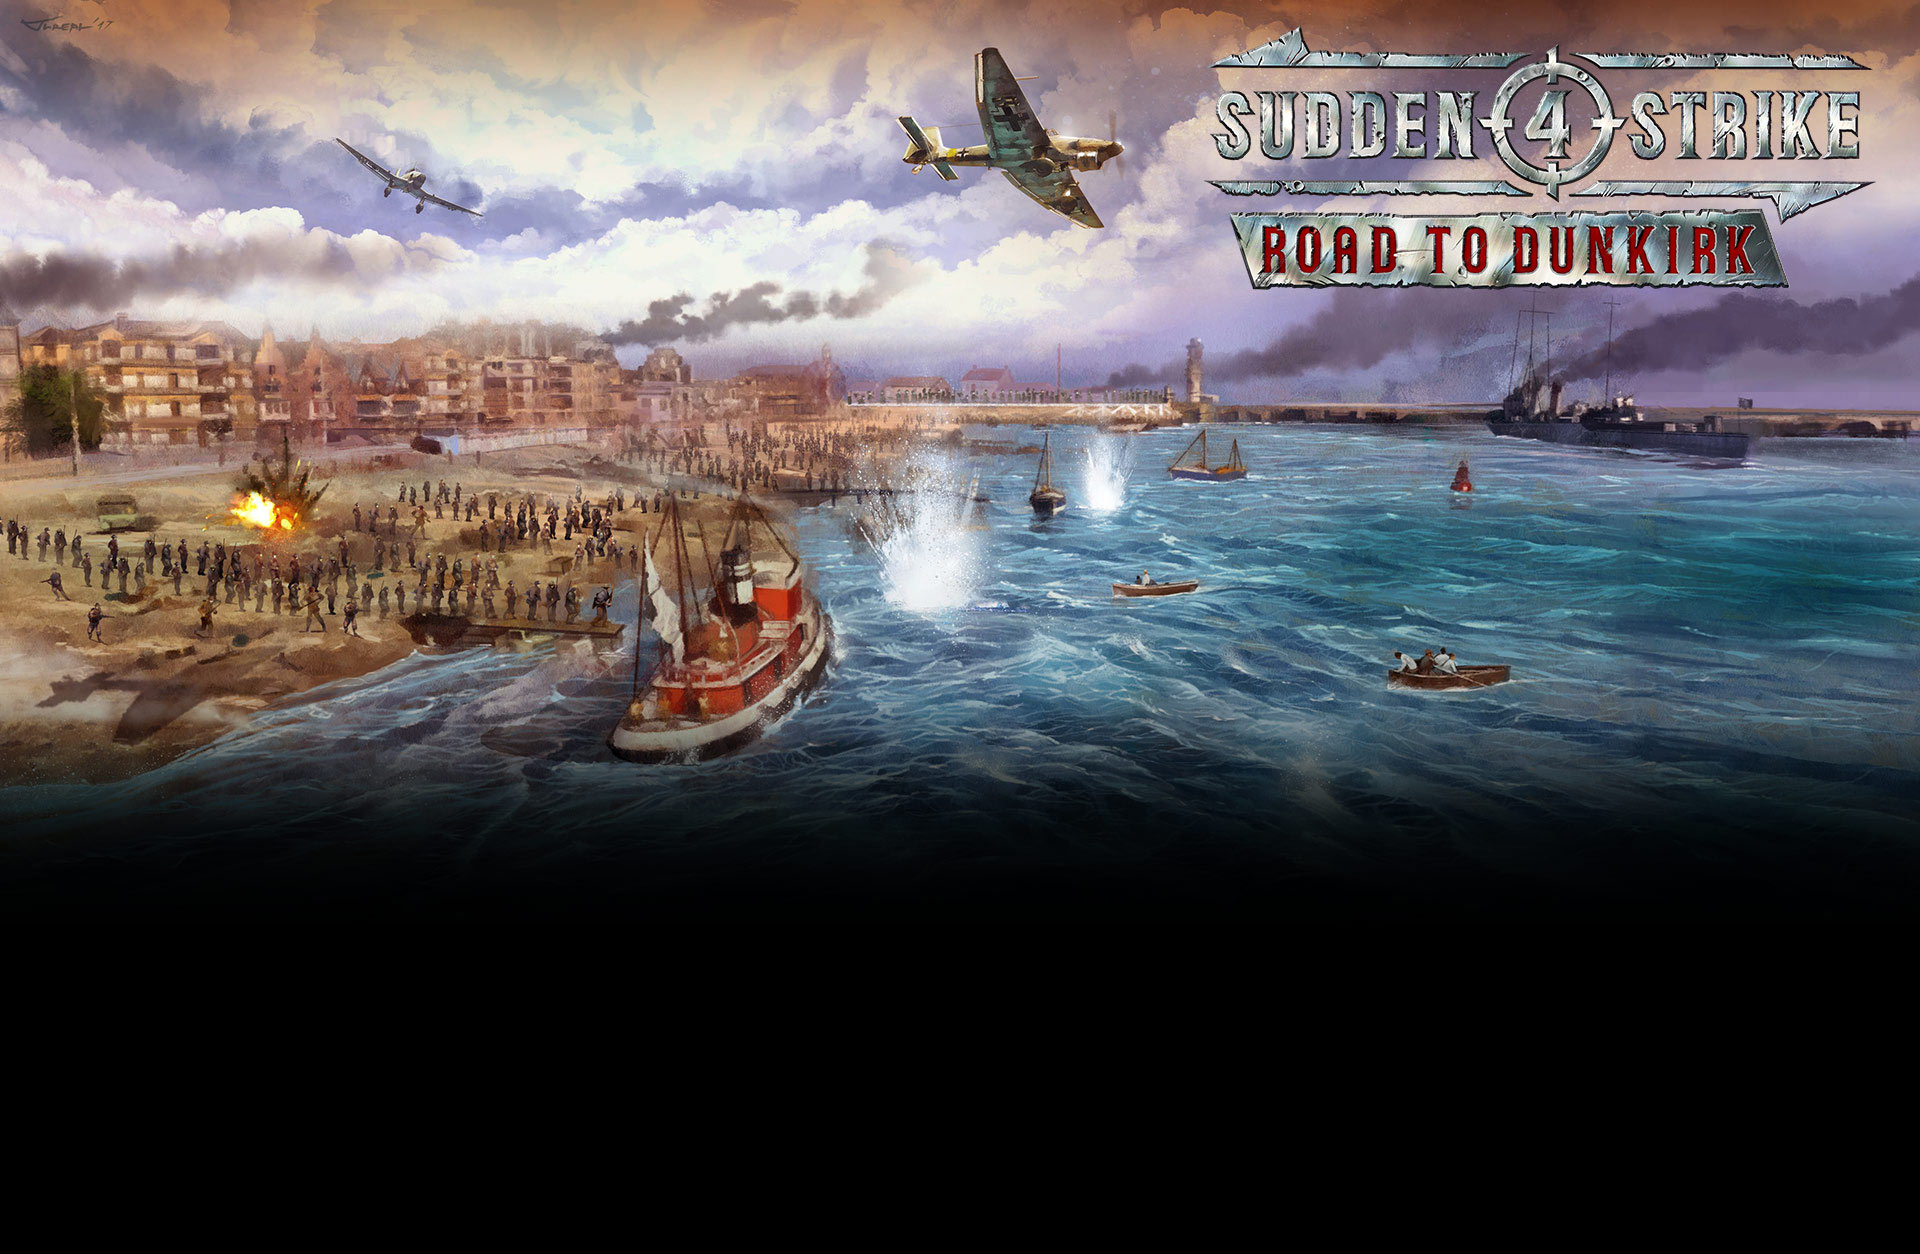 Sudden Strike 4 - Road to Dunkirk (DLC)